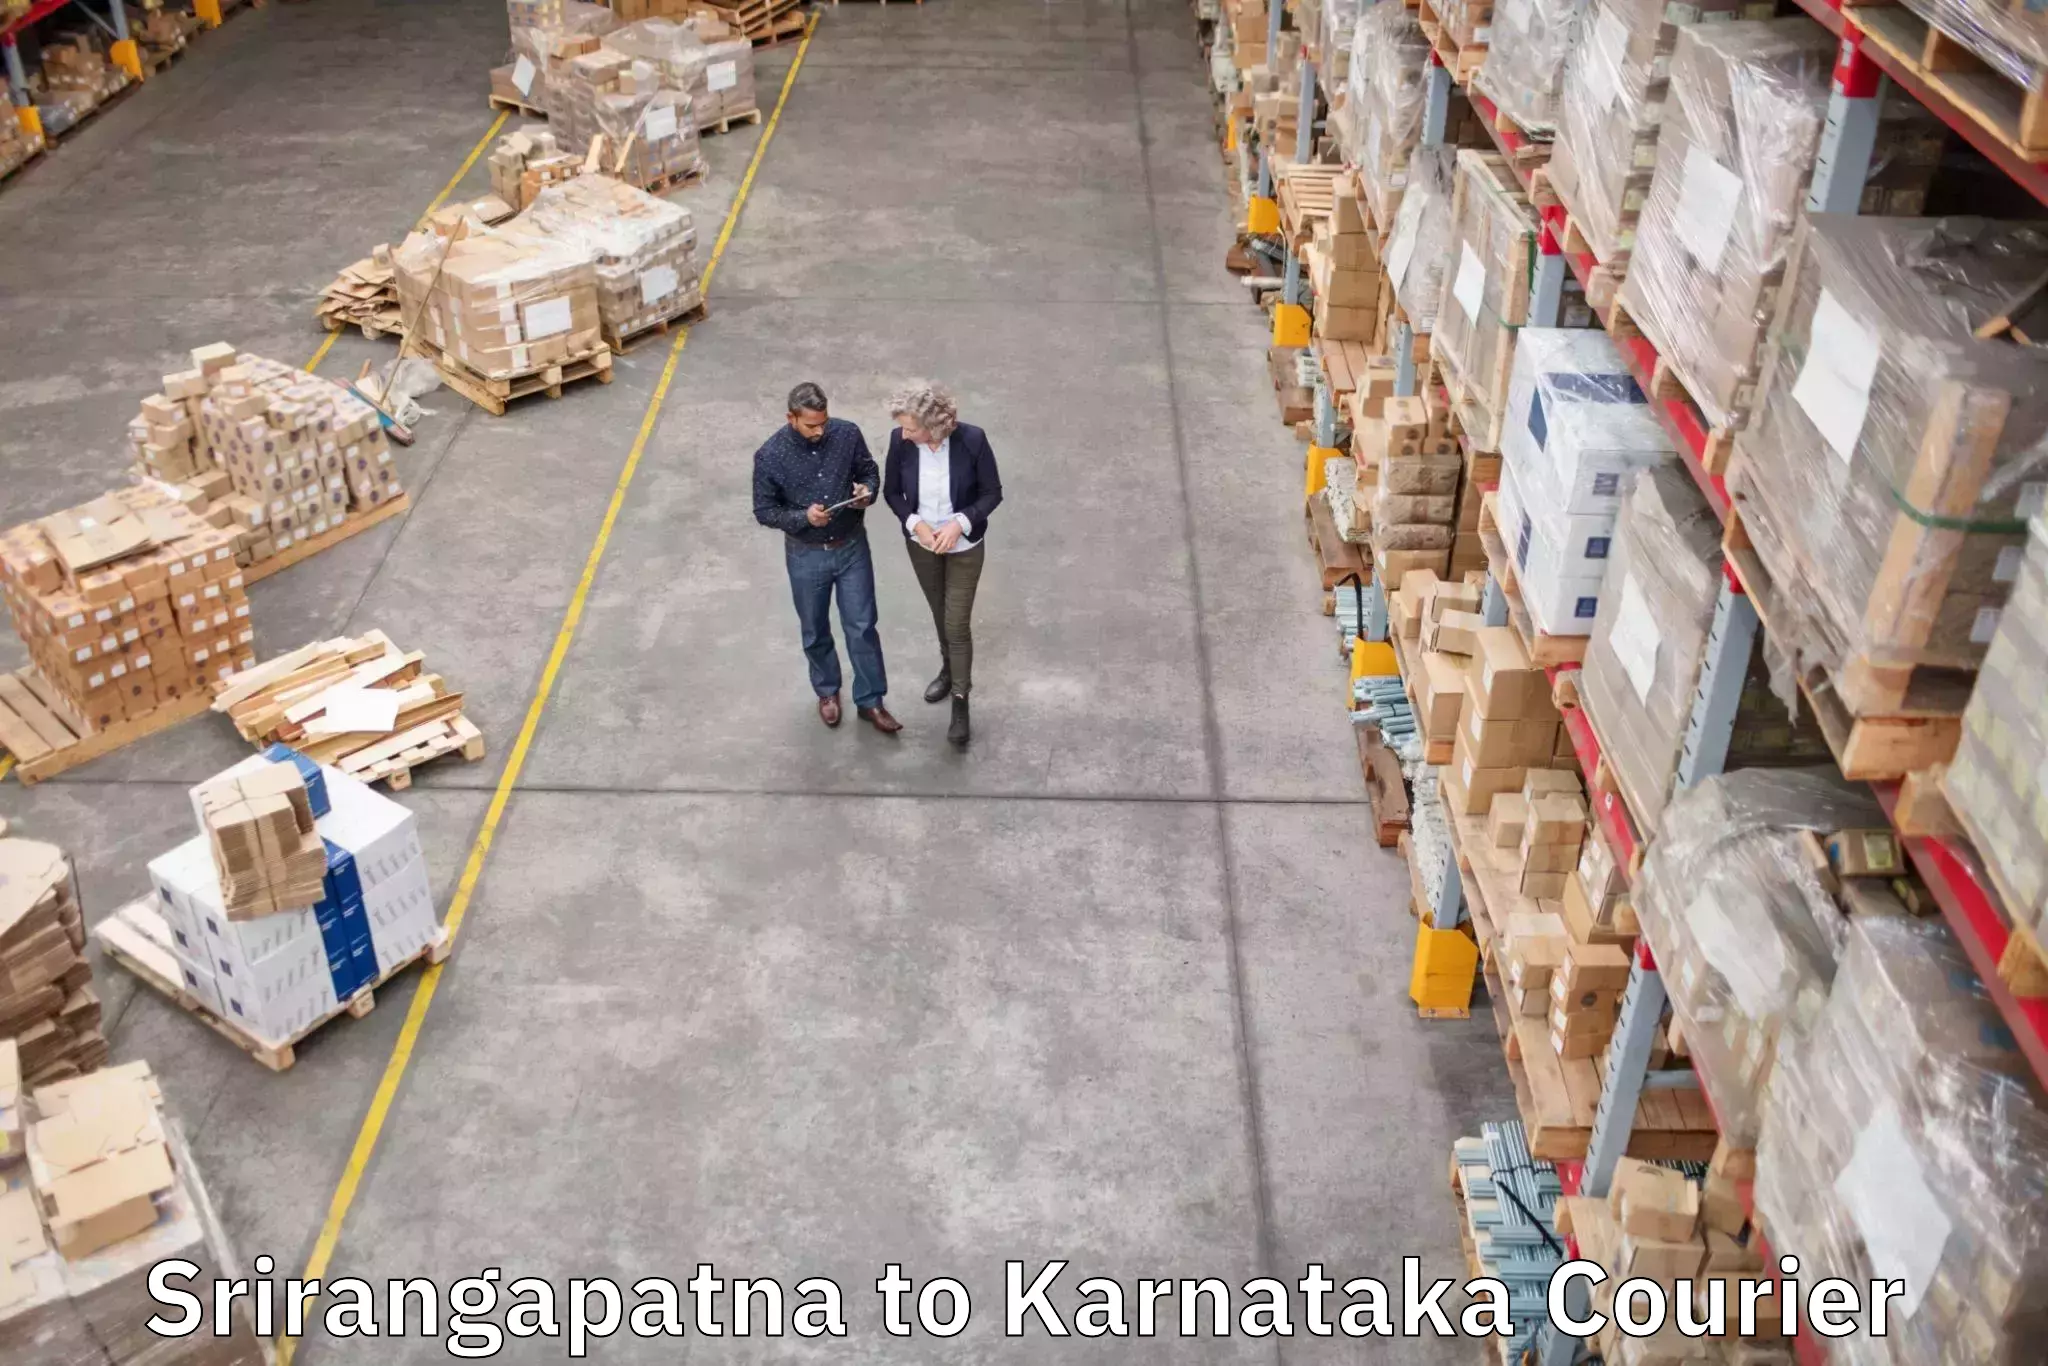 Luggage delivery app Srirangapatna to Hagaribommanahalli